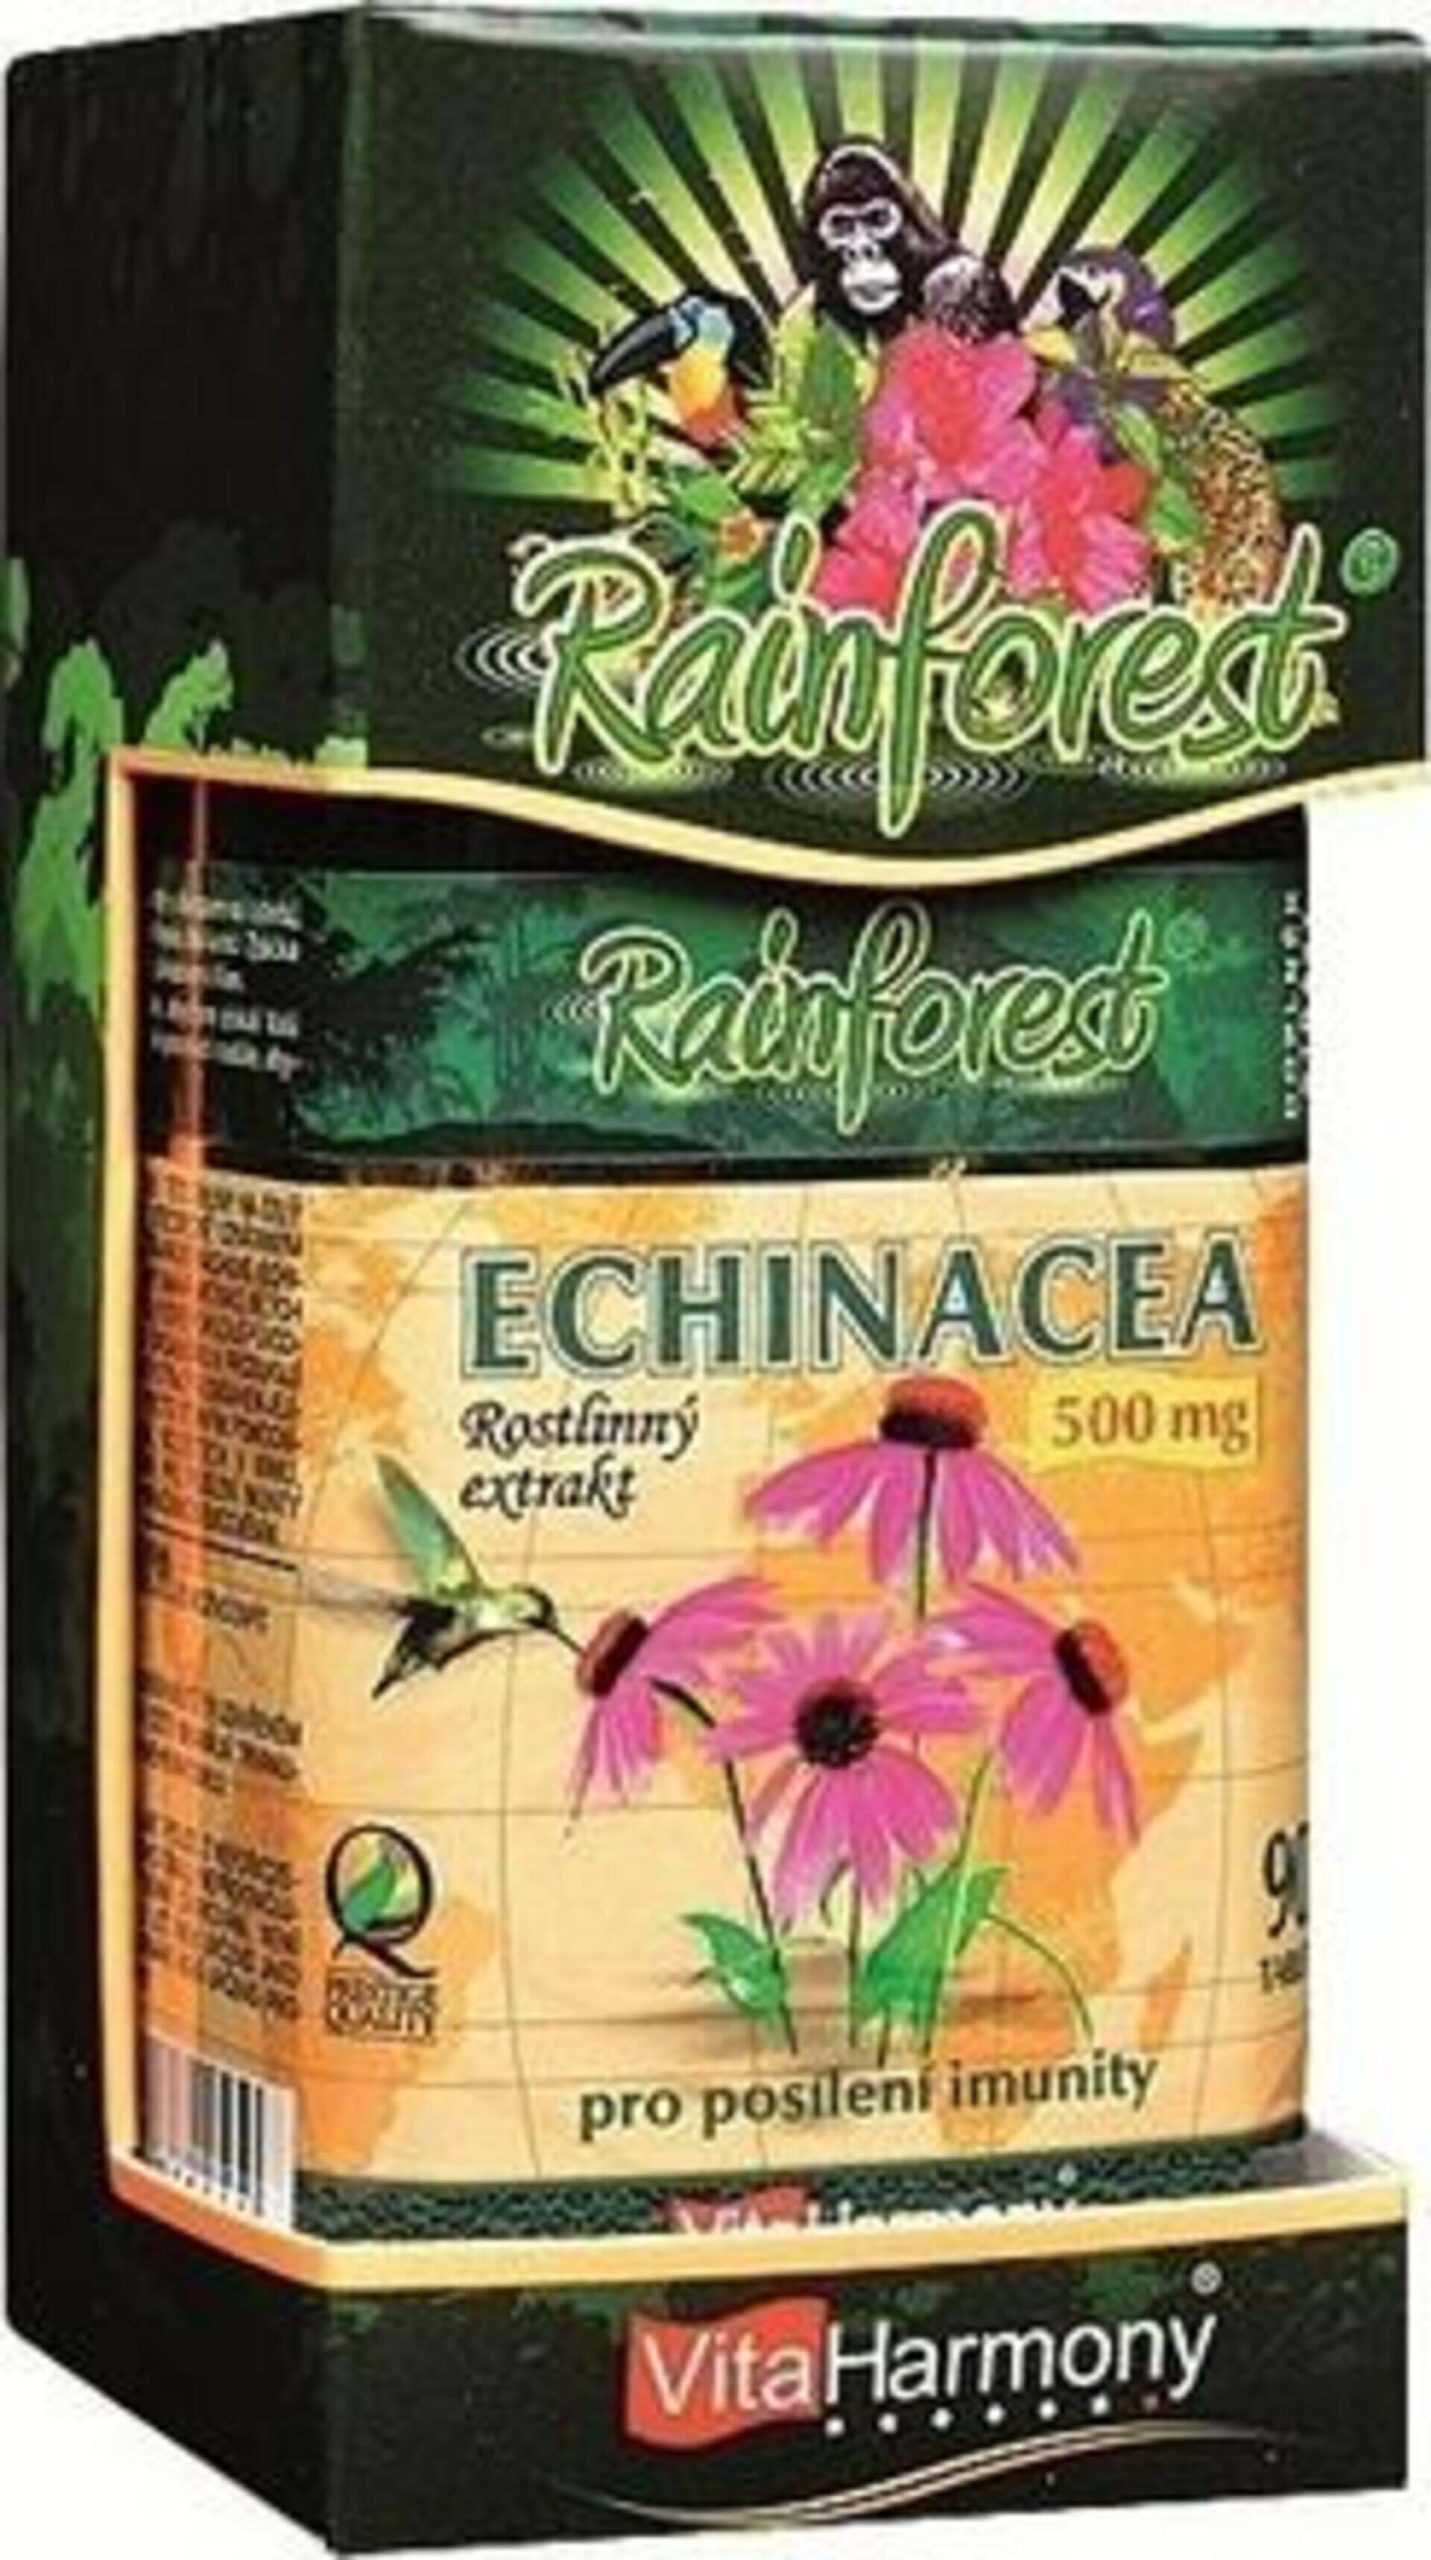 VitaHarmony Echinacea 500mg 90 tablet expirace